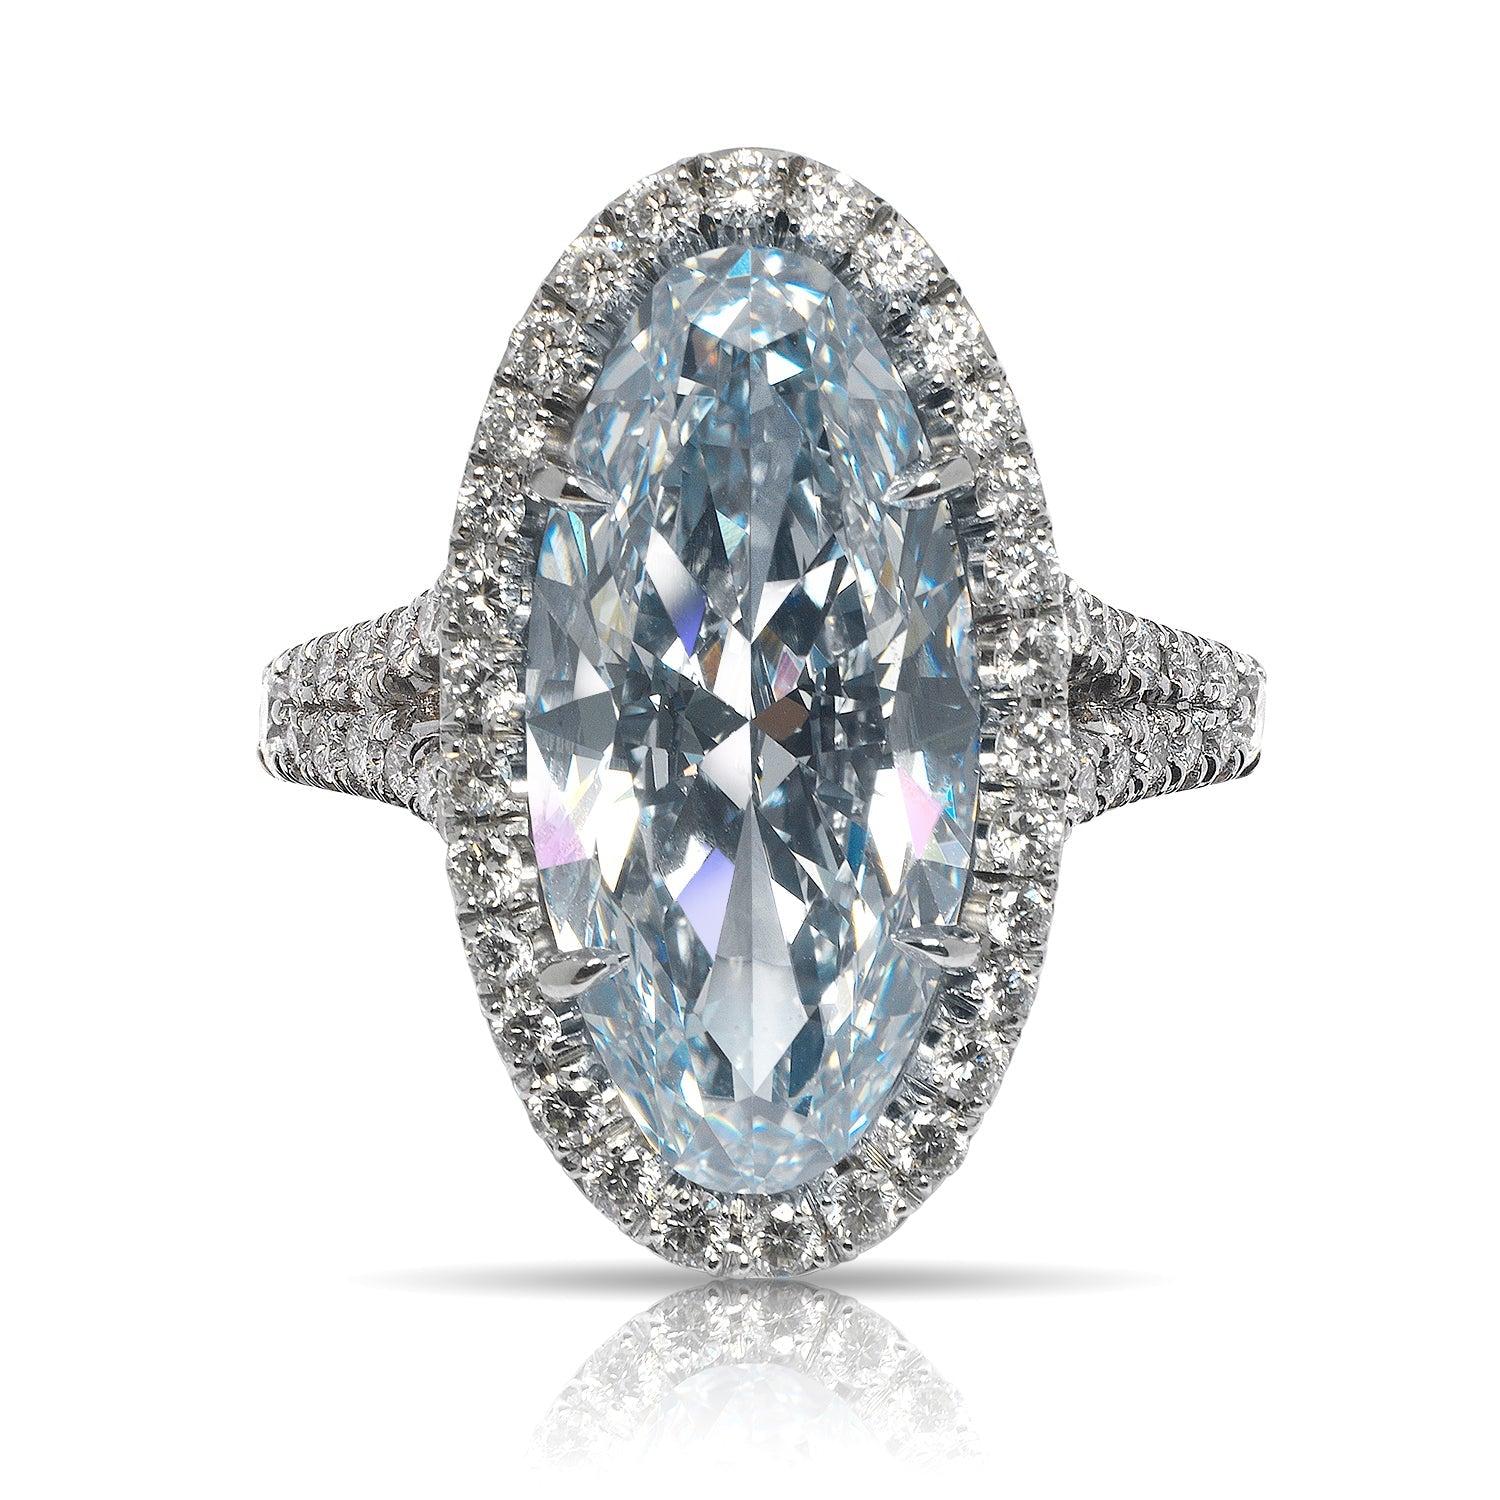 HOPE -HALO OVALER DIAMANTENER VERLOBUNGSRING VON MIKE NEKTA

GIA-ZERTIFIZIERT

Diamant in der Mitte:
Karatgewicht: 5.26 Karat
Farbe : FANCY GRAYISH BLUE*
Klarheit: VS1
Stil: OVAL BRILLIANT
Ungefähre Maße: 18,4 x 8,8 x 4,8 mm
* Dieser Diamant wurde